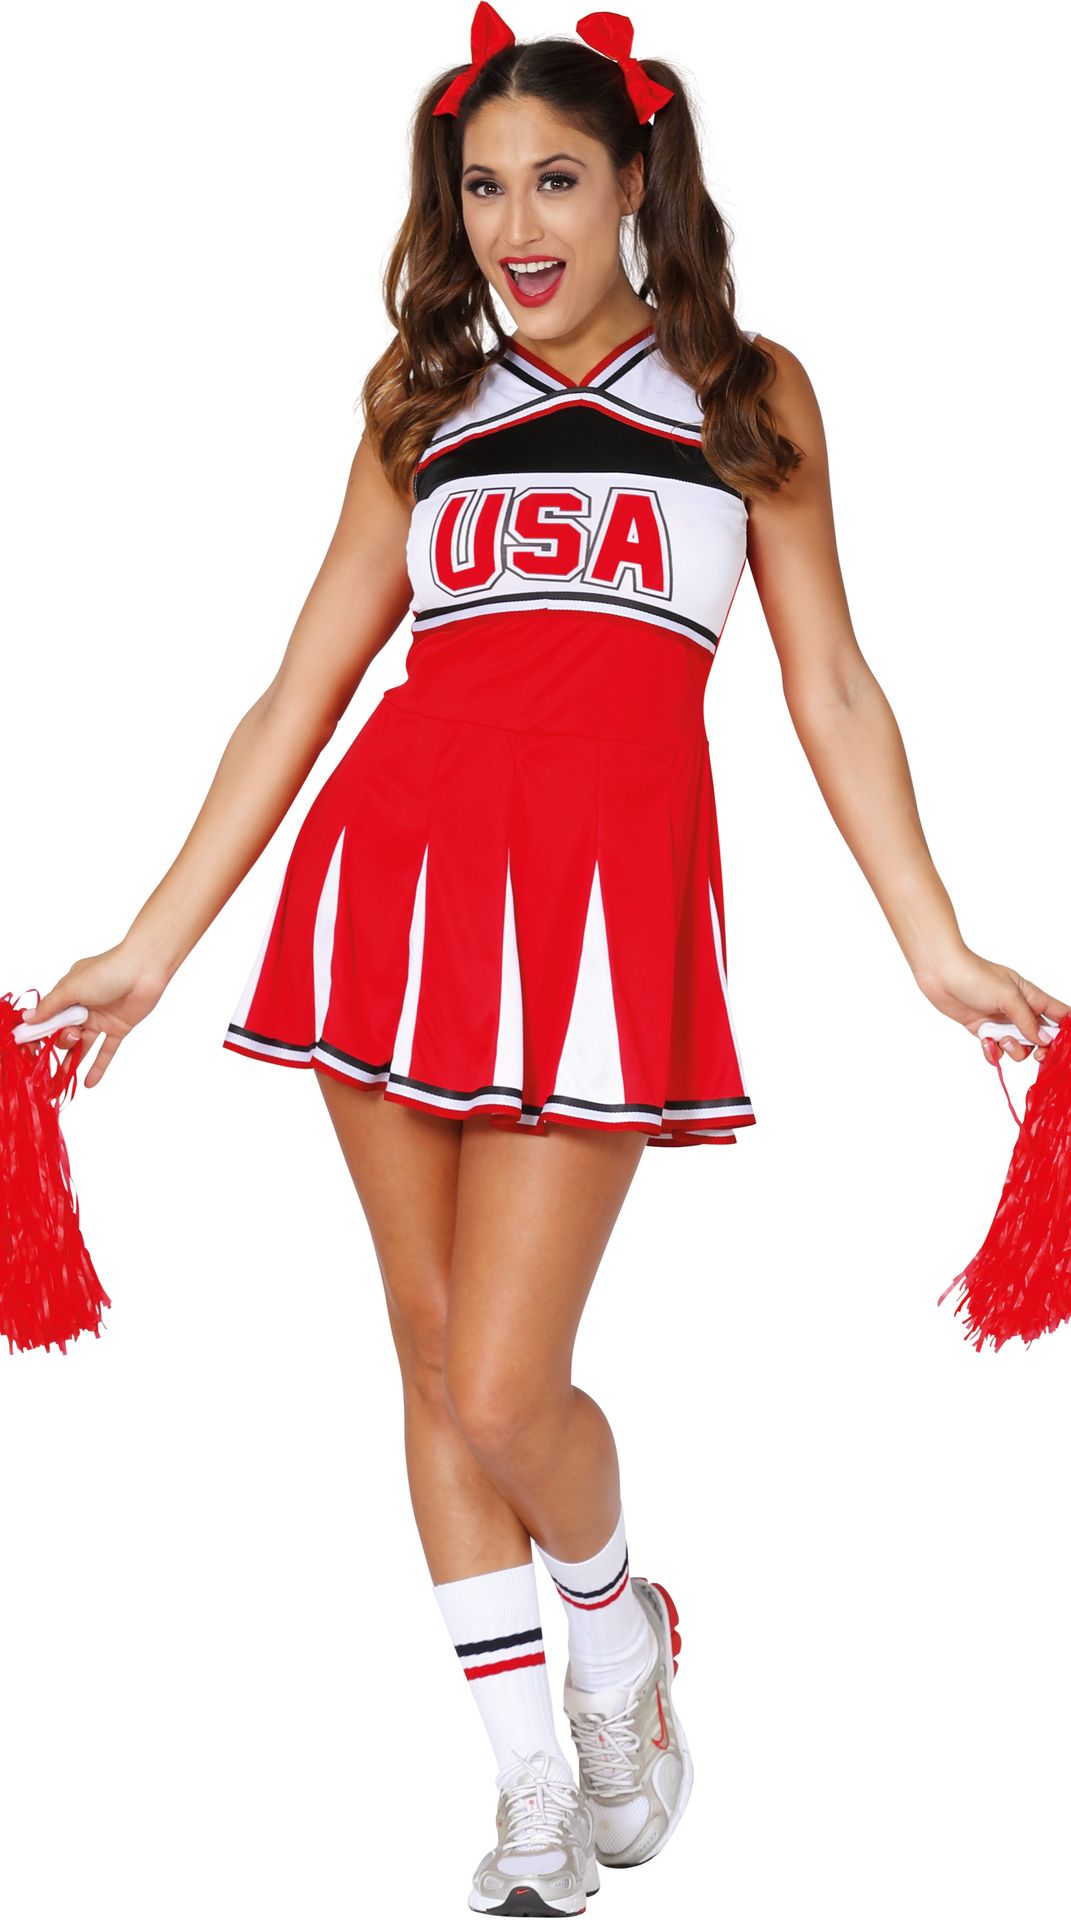 Cheerleader USA pakje